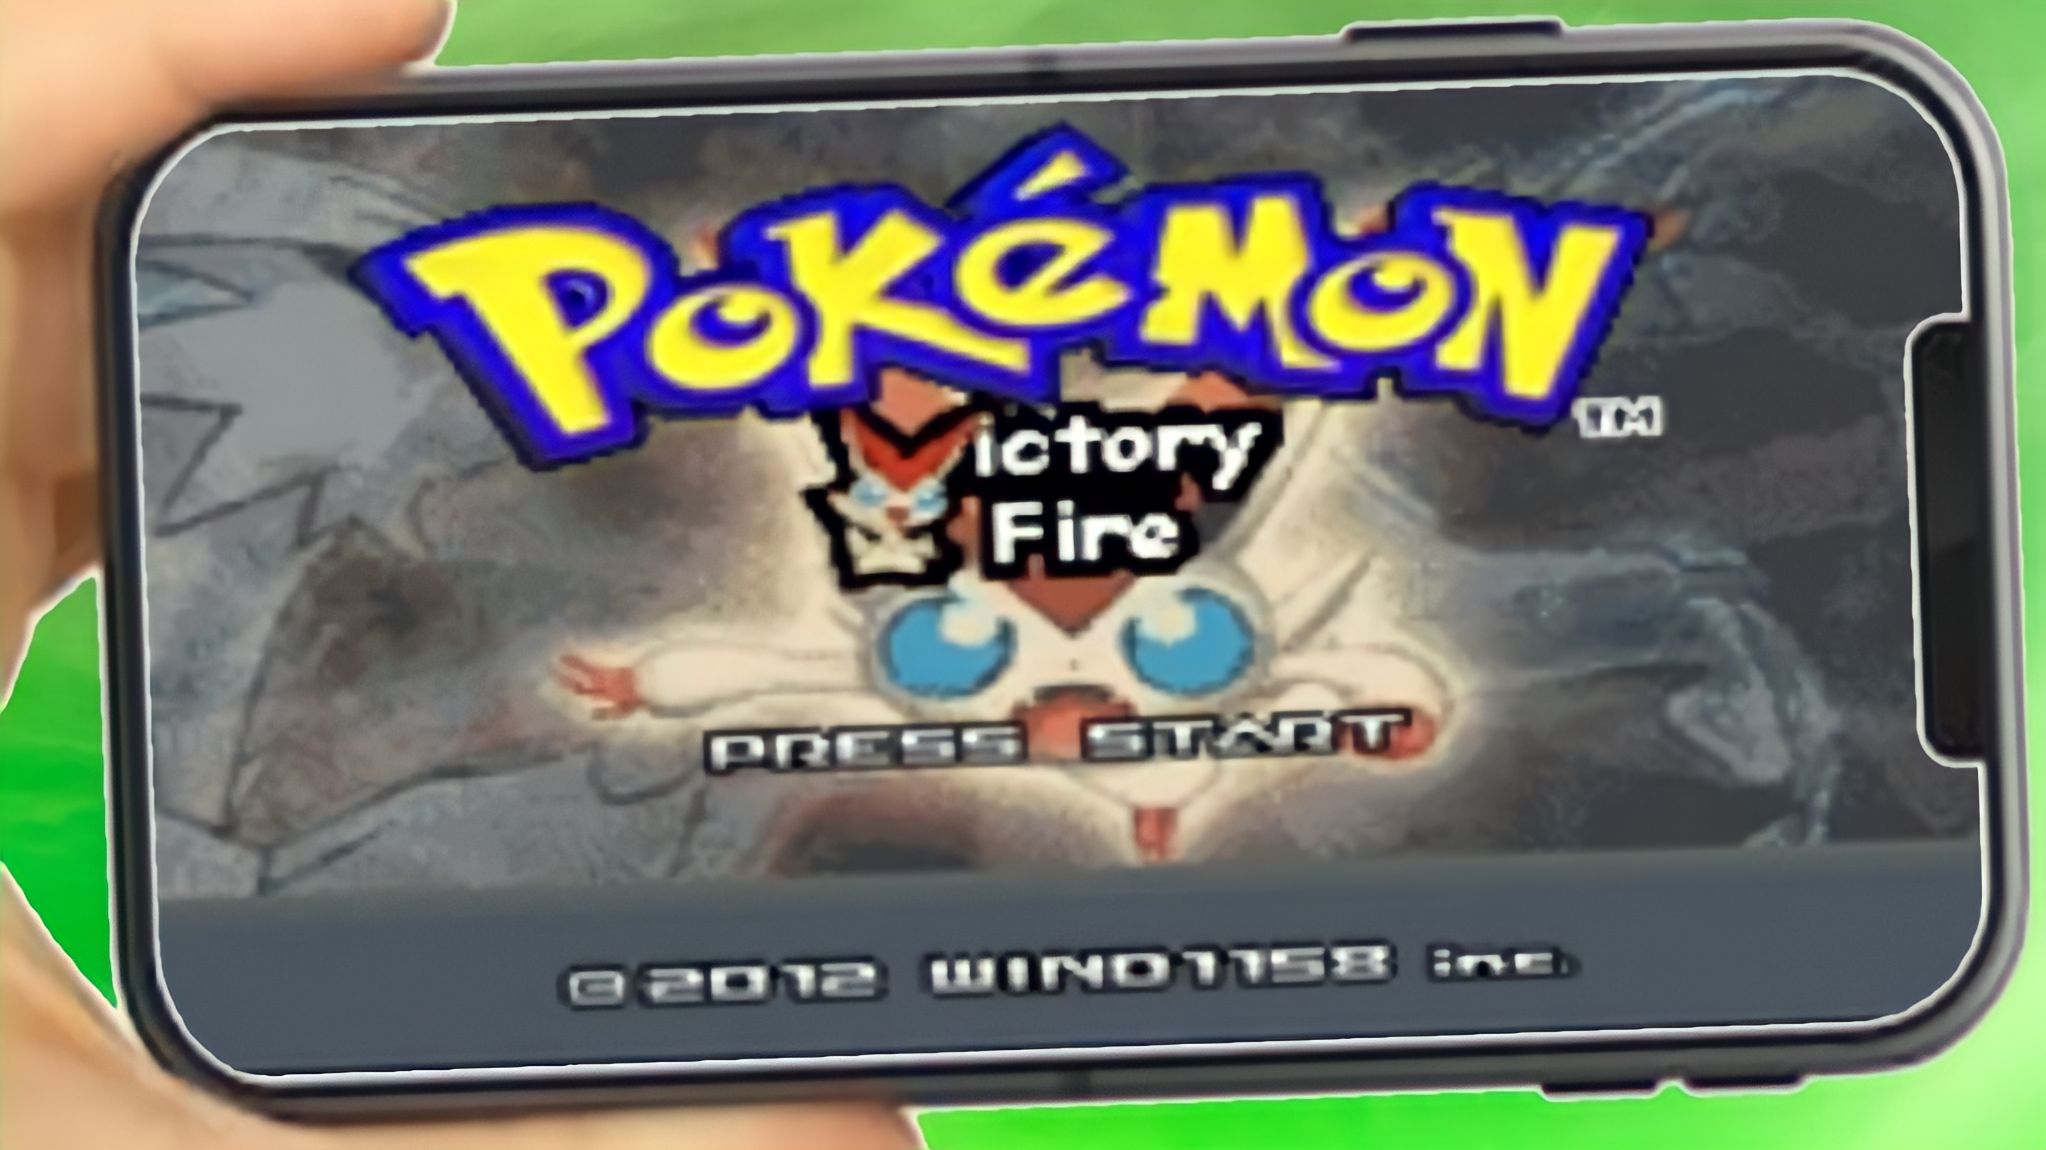 VICTORY ROAD: O Caminho pra LIGA POKÉMON  Pokémon FireRed Extended (Hack  Rom - GBA) #15 